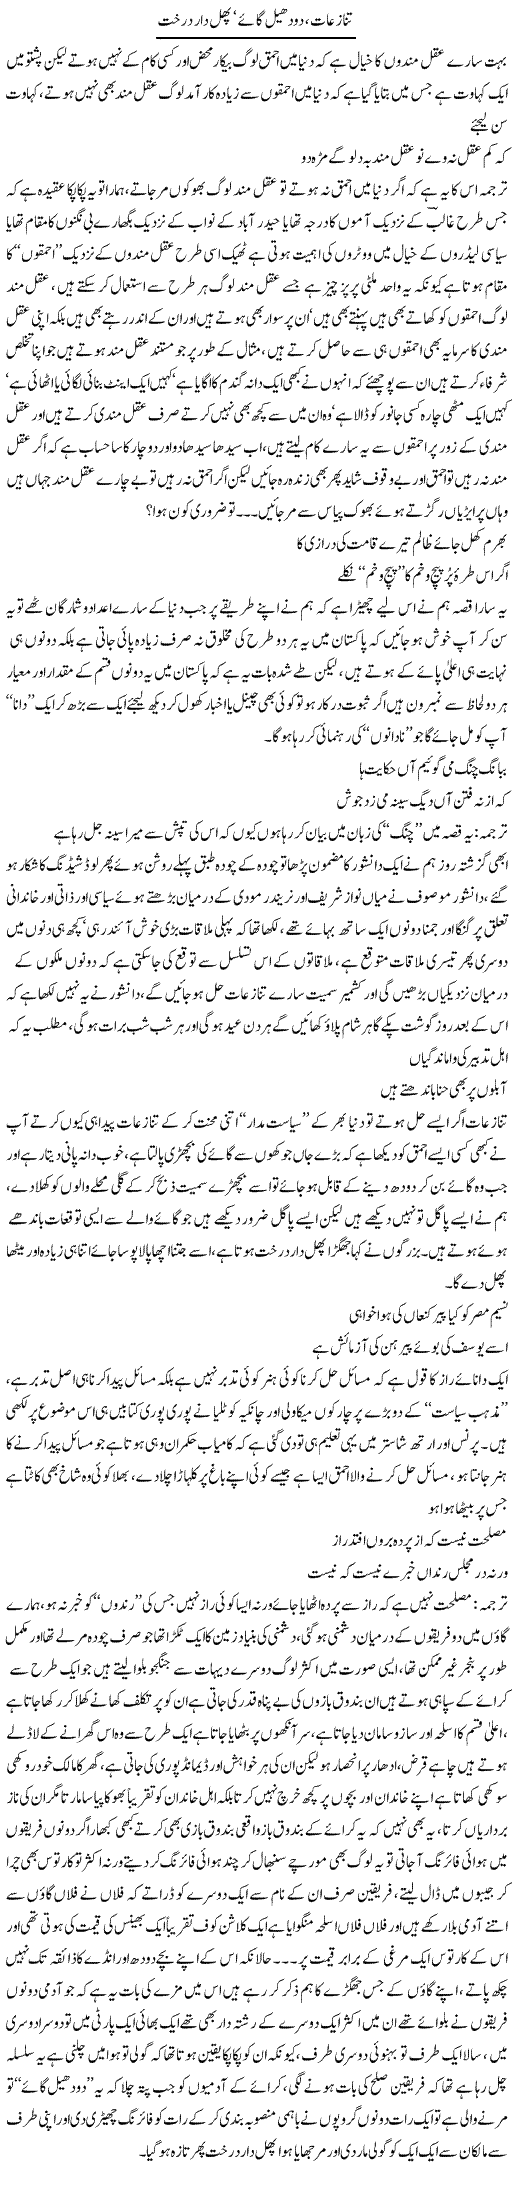 Tanaziat Dodhail Gaye Our Phaldar Darakht | Saad Ullah Jan Barq | Daily Urdu Columns